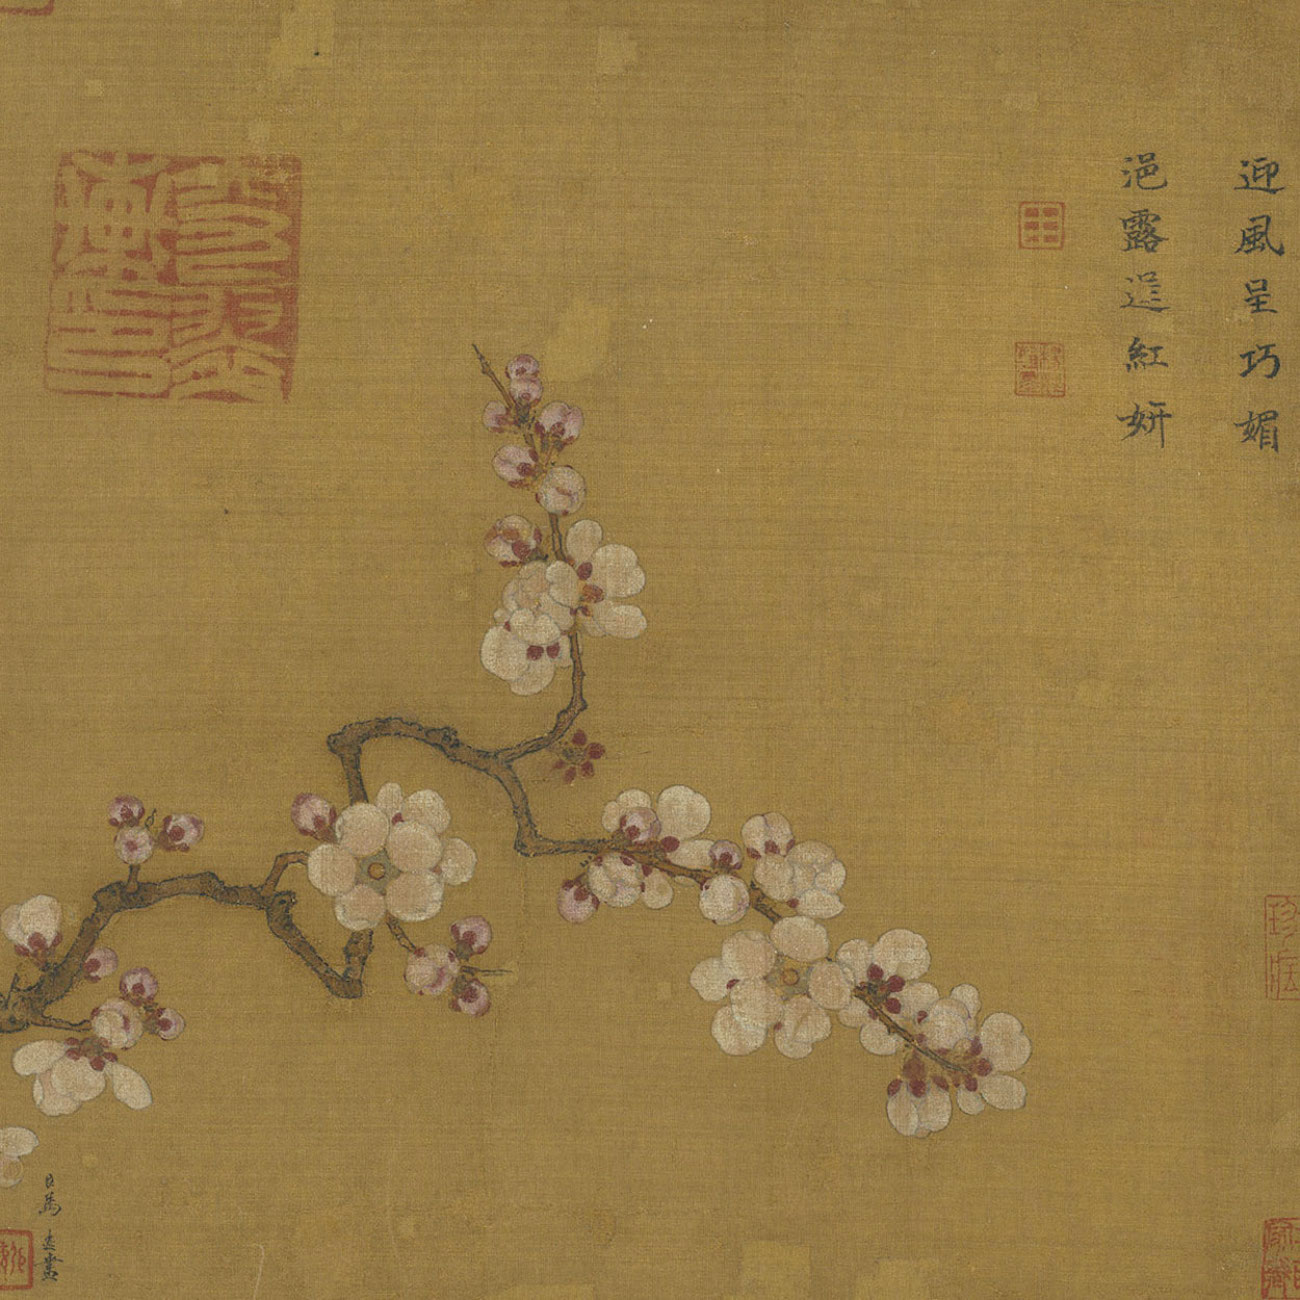 أزهار المشمش by Ma Yuan - بين عامي 1162 و 1232 - الأبعاد:  cm 25.8x27.3 